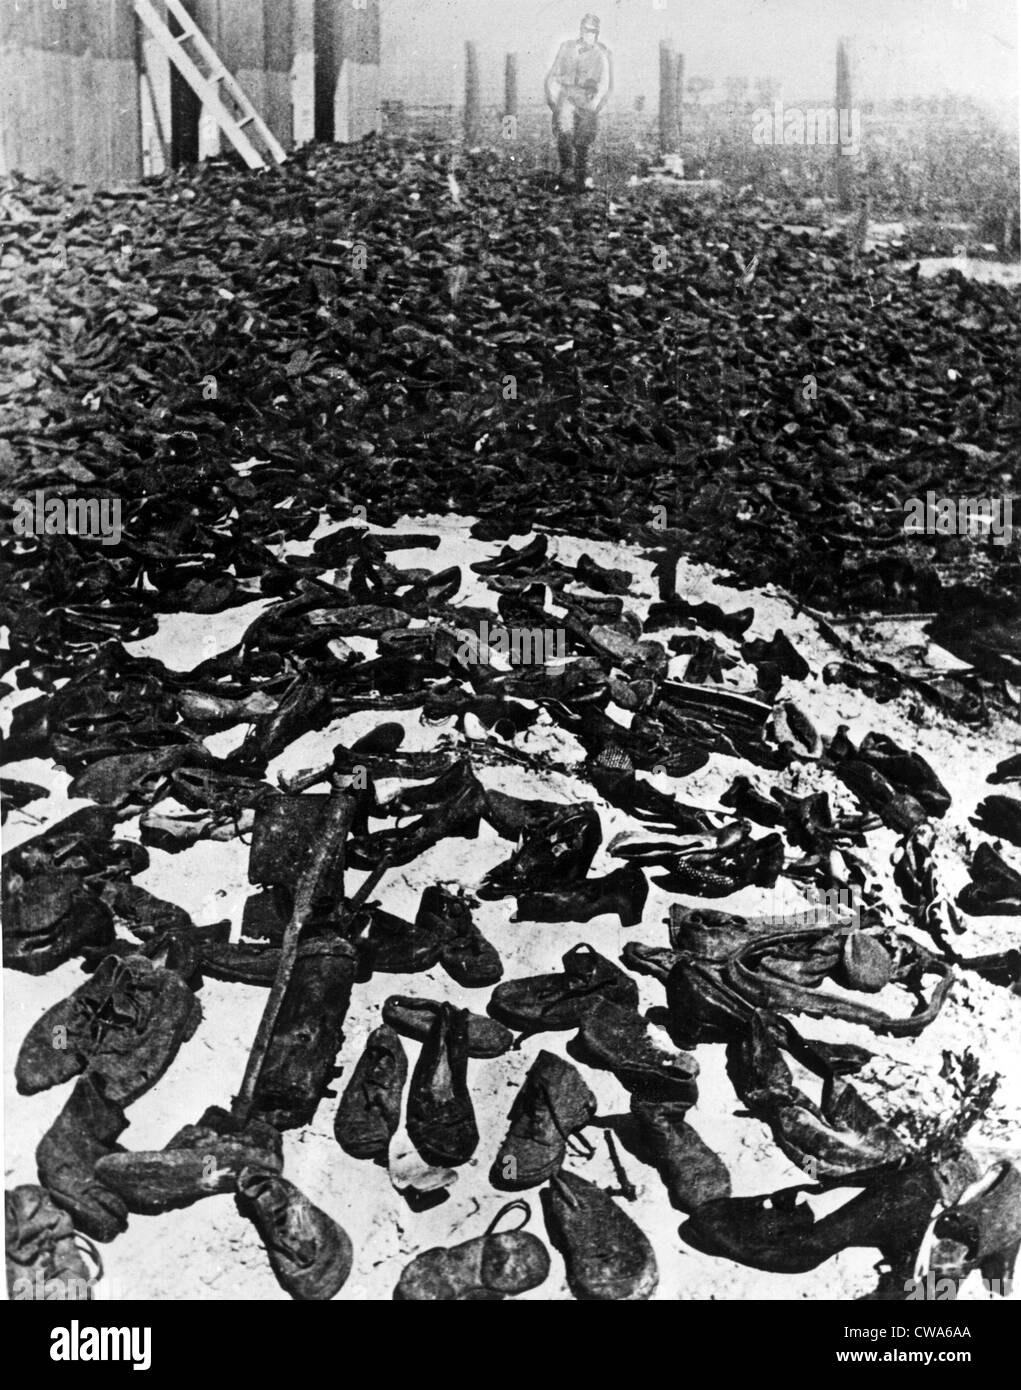 LUBLIN, Polonia--calzature indossate dai milioni di uomini, donne e bambini che hanno marciato attraverso la gatess dell'annientamento camp. Foto Stock